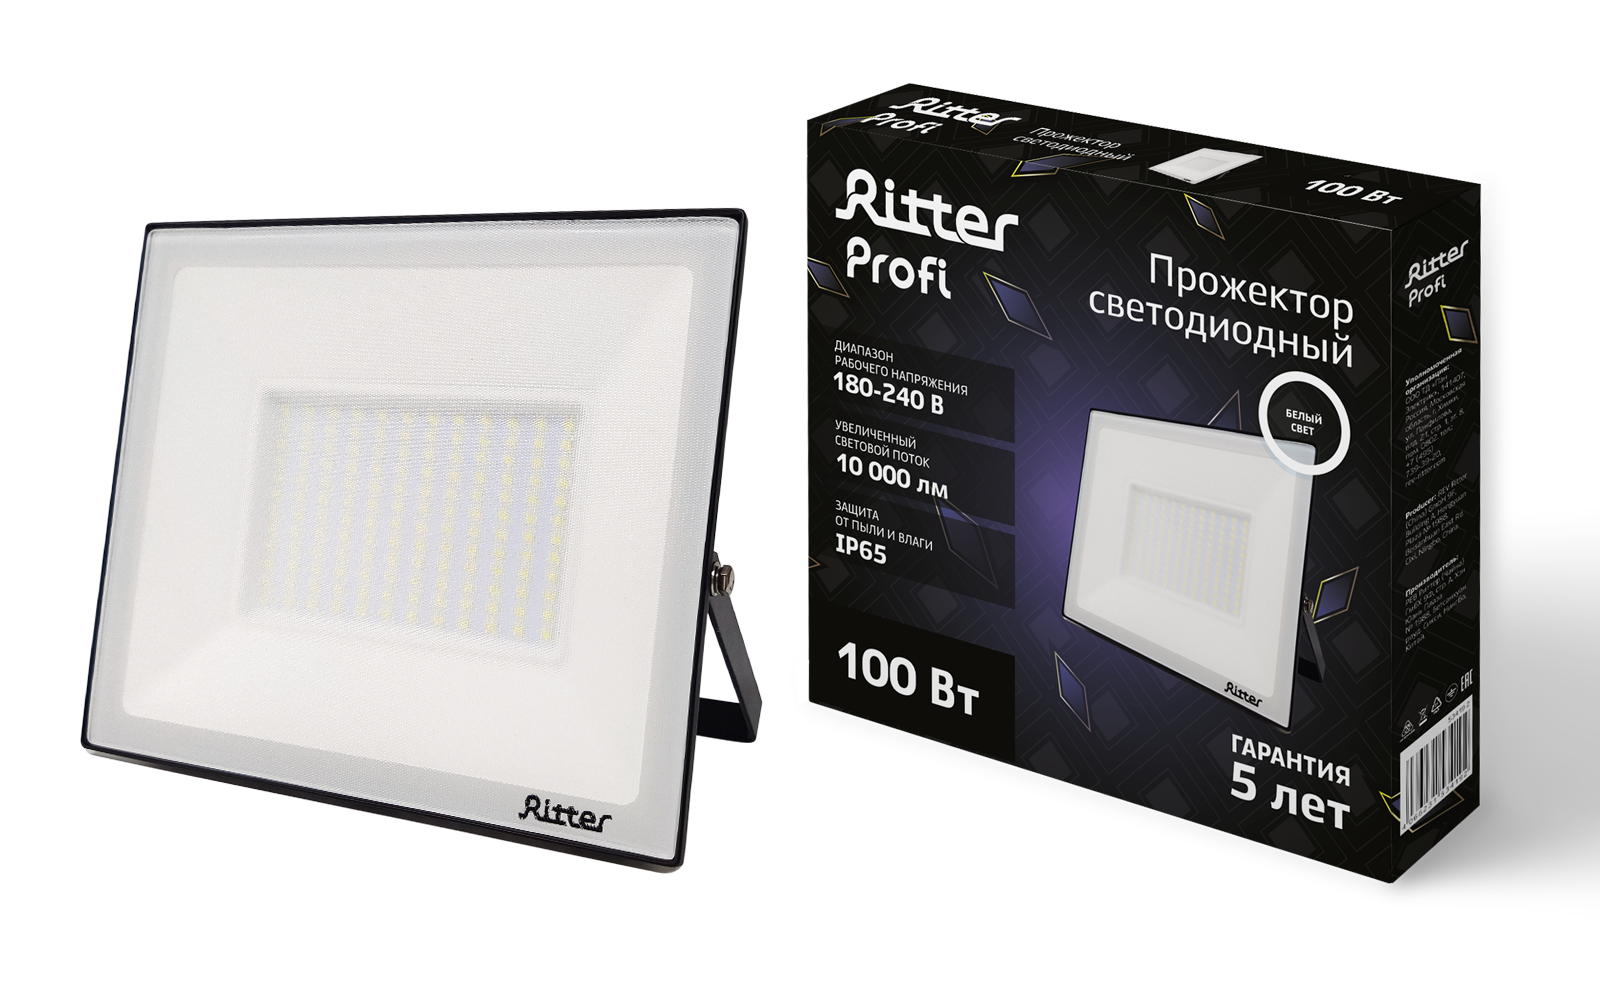 Прожектор Ritter Profi светодиодный, 180-240В, 100 Вт, 4000 К, 10000 Лм, IP65, черный